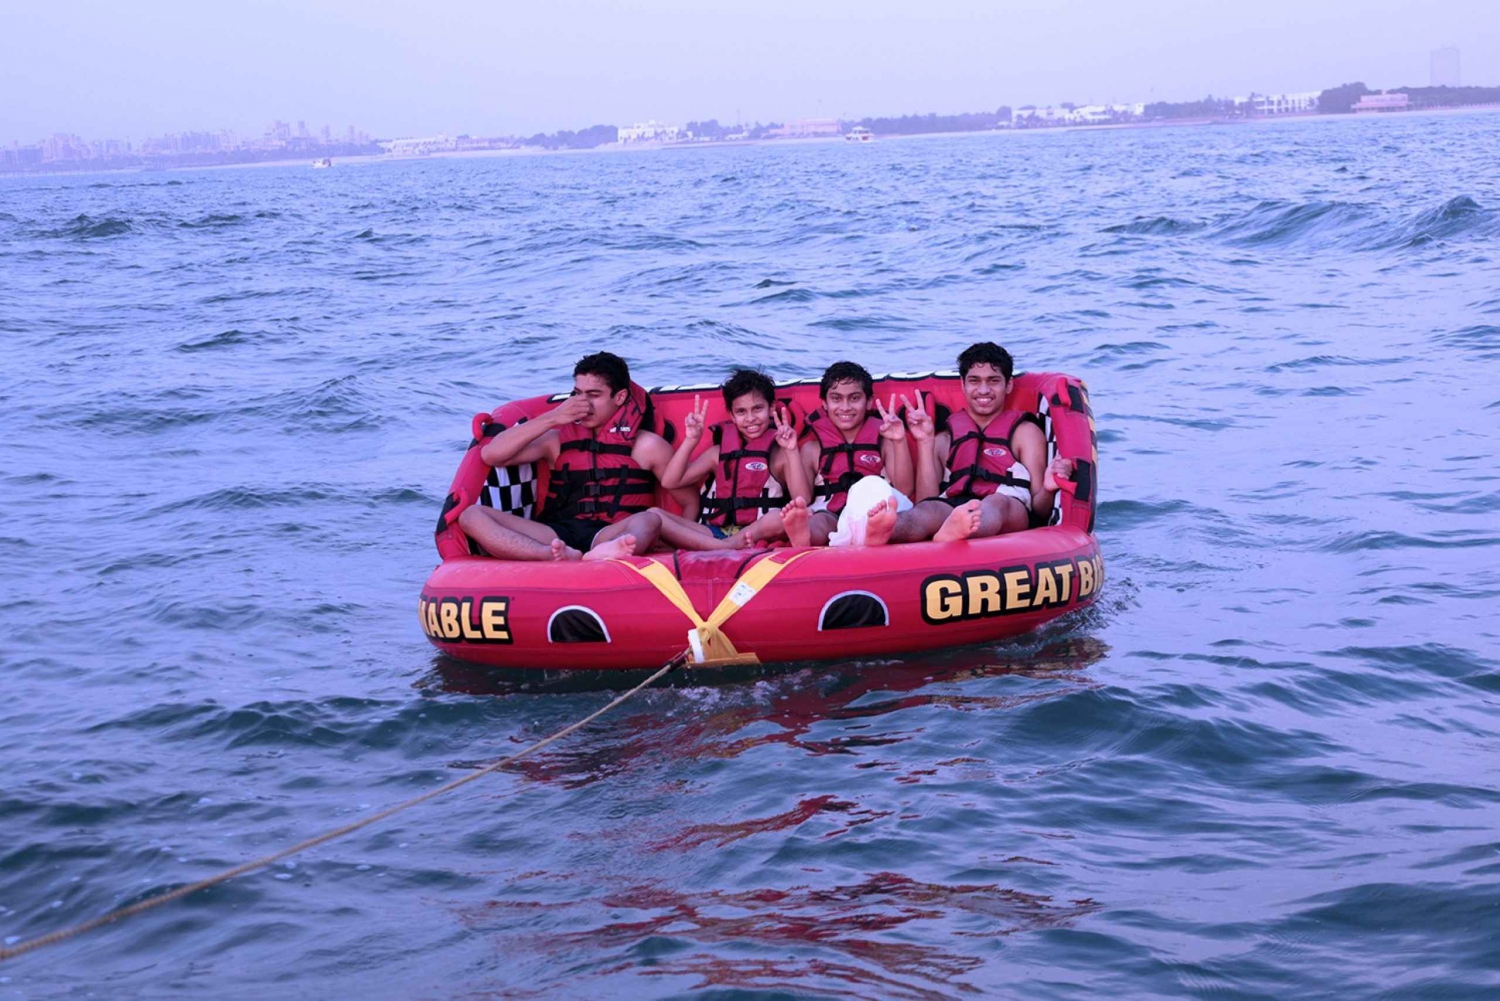 Dubai: Exklusive 15-minütige Donut-Boot-Fahrt für Gruppen